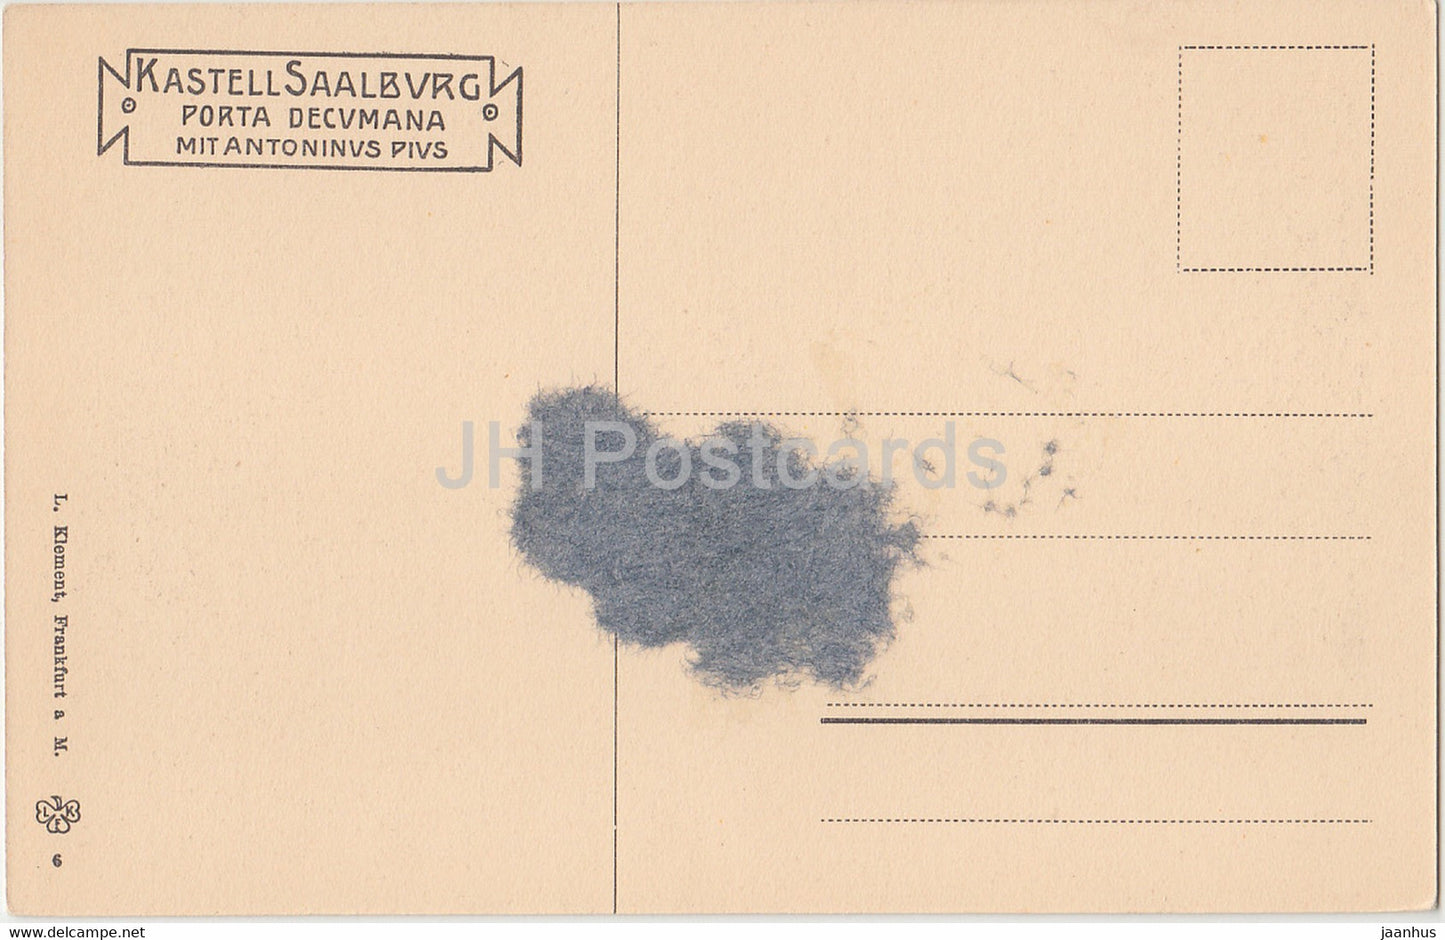 Kastell Saalburg - Porta Decumana mit Antonius Pius - old postcard - Germany - unused